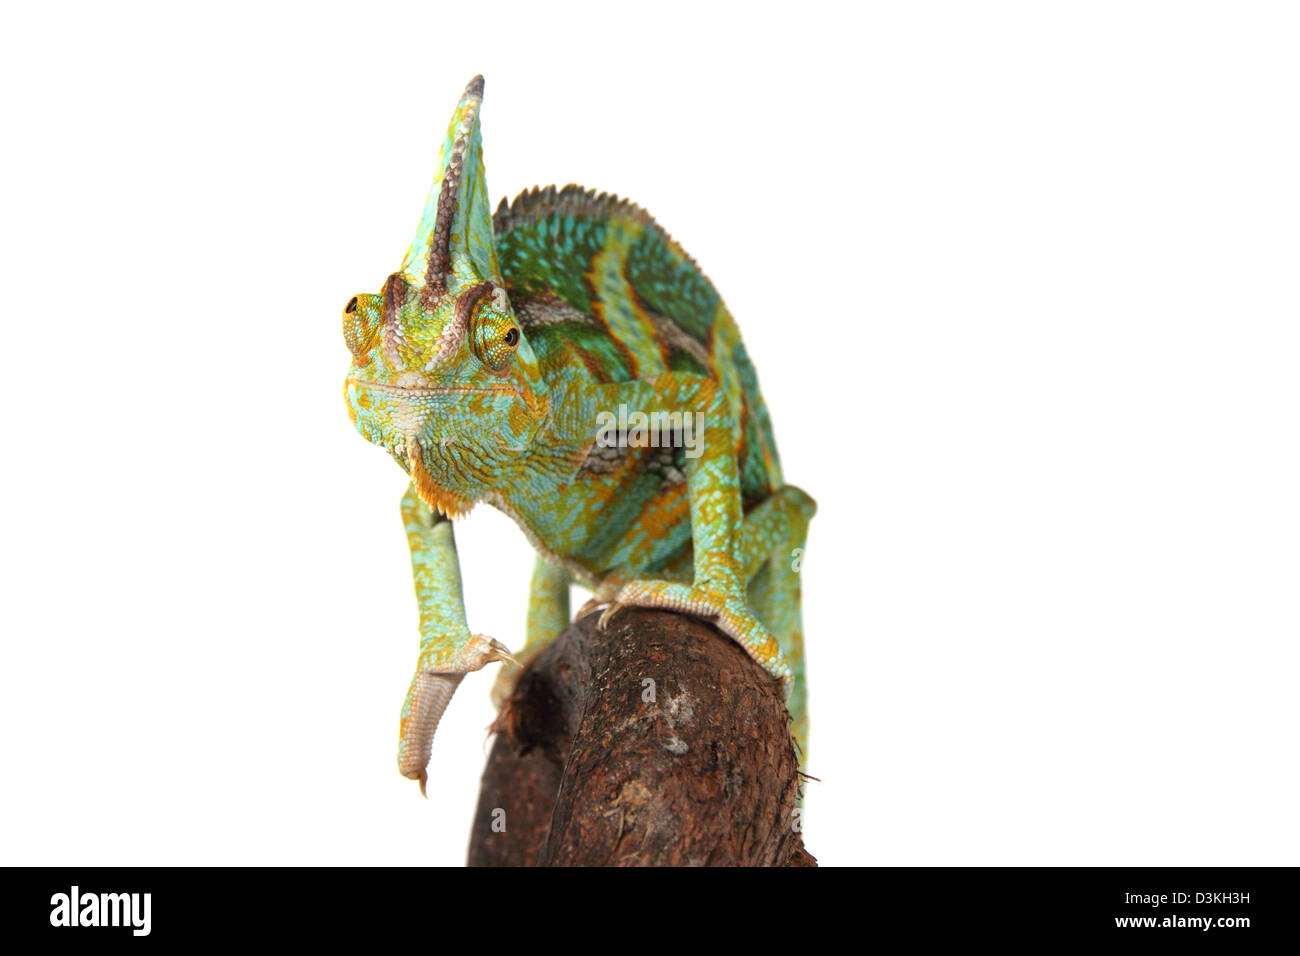 Chamaeleo calyptratus caméléon voilée, photographié dans un studio adapté à la découpe Banque D'Images